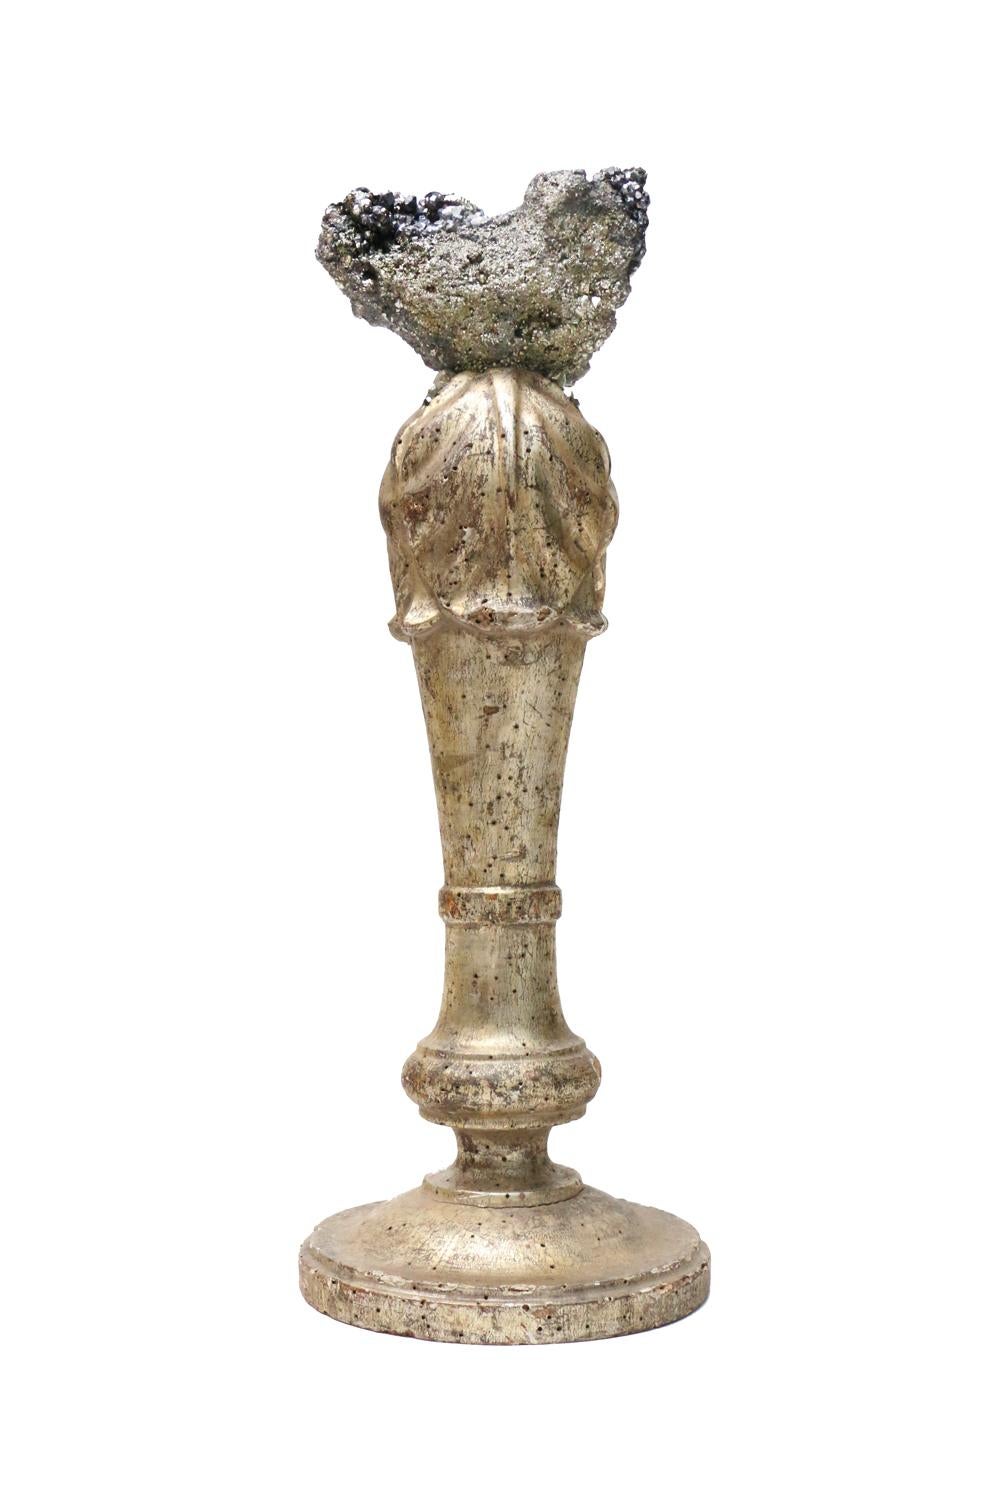 Bougeoir italien sculptural du XVIIIe siècle monté avec des dépôts de galène et de pyrite.

Le fragment doré faisait à l'origine partie d'un chandelier dans une église italienne historique en Italie. Il est monté avec la coordination de galène et de